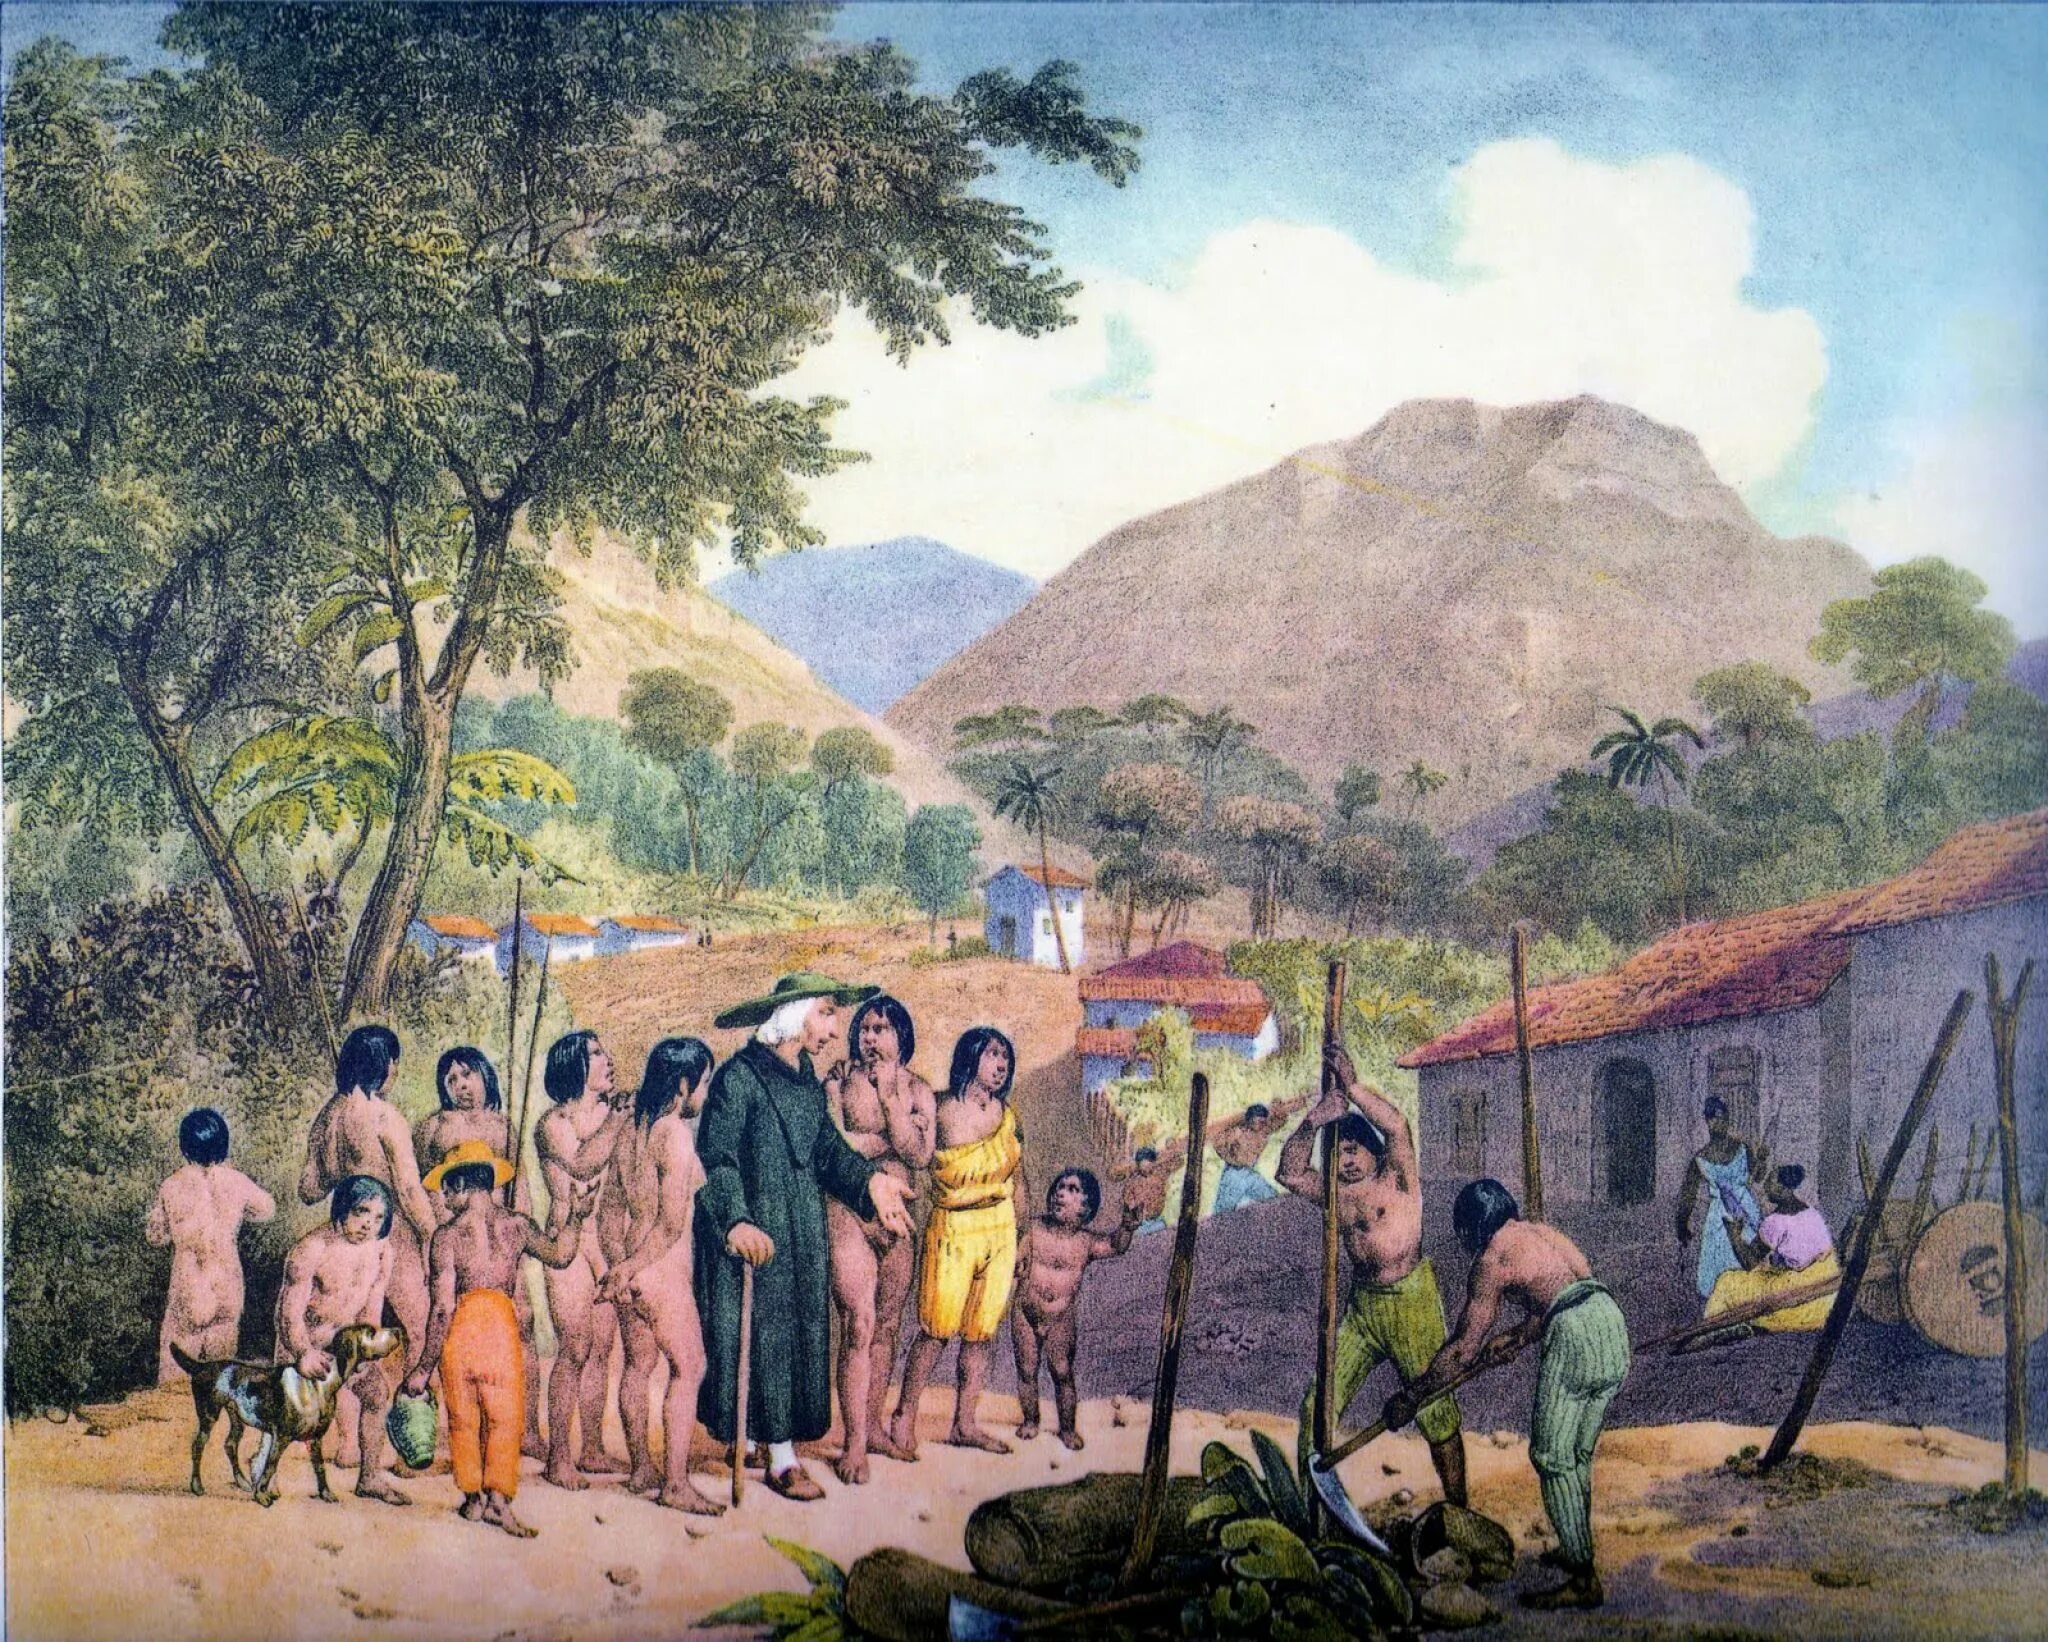 Ретро миссионеры. Сельское хозяйство Латинской Америки 19 век. Колония испанцев в Латинской Америке 18 век. Колонизация Латинской Америки 19 век. Колонизация индейцев в Латинской Америке.